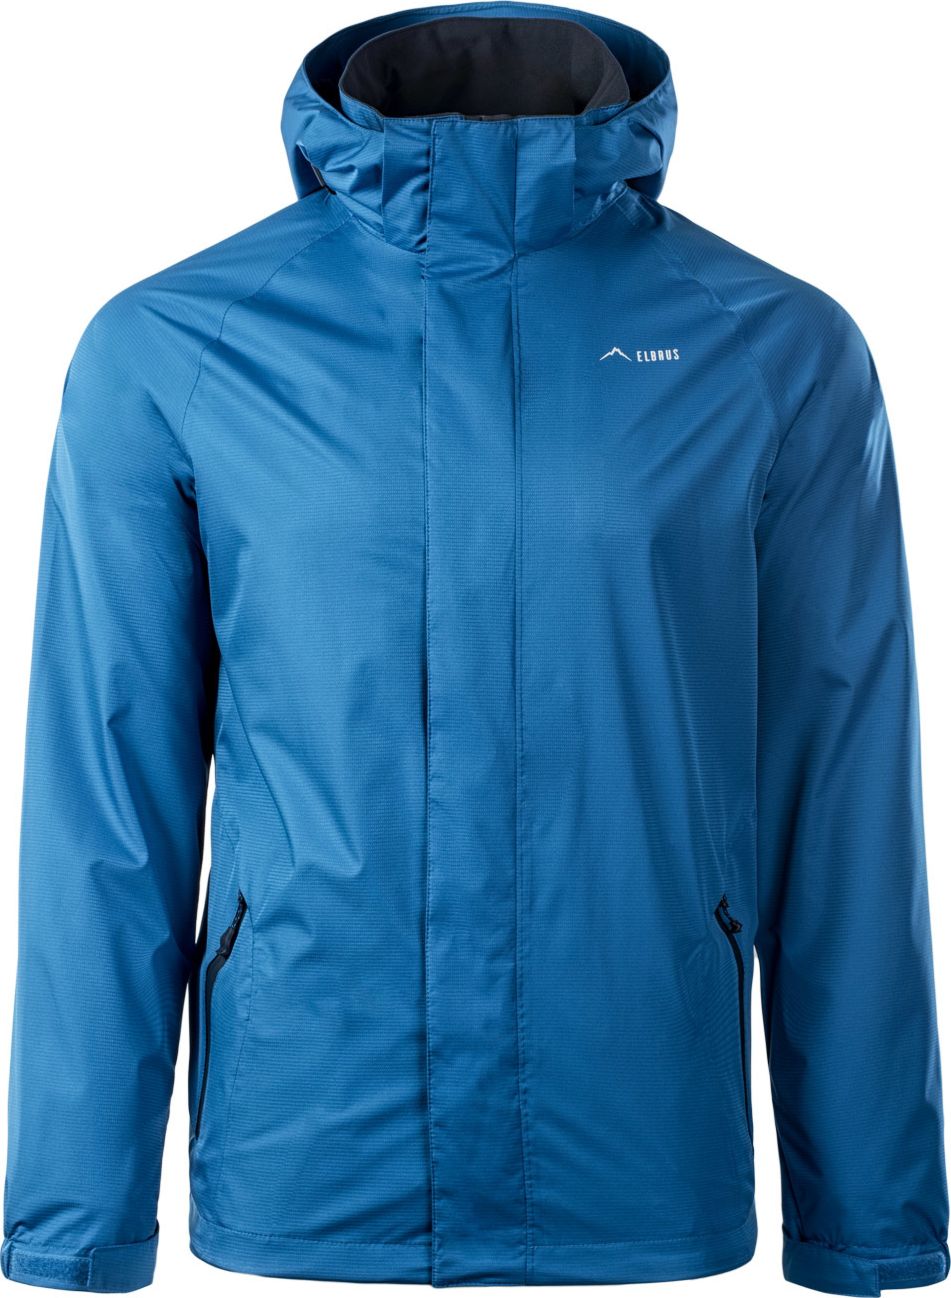 Jachetă pentru bărbați albastru Elbrus Makari s. M